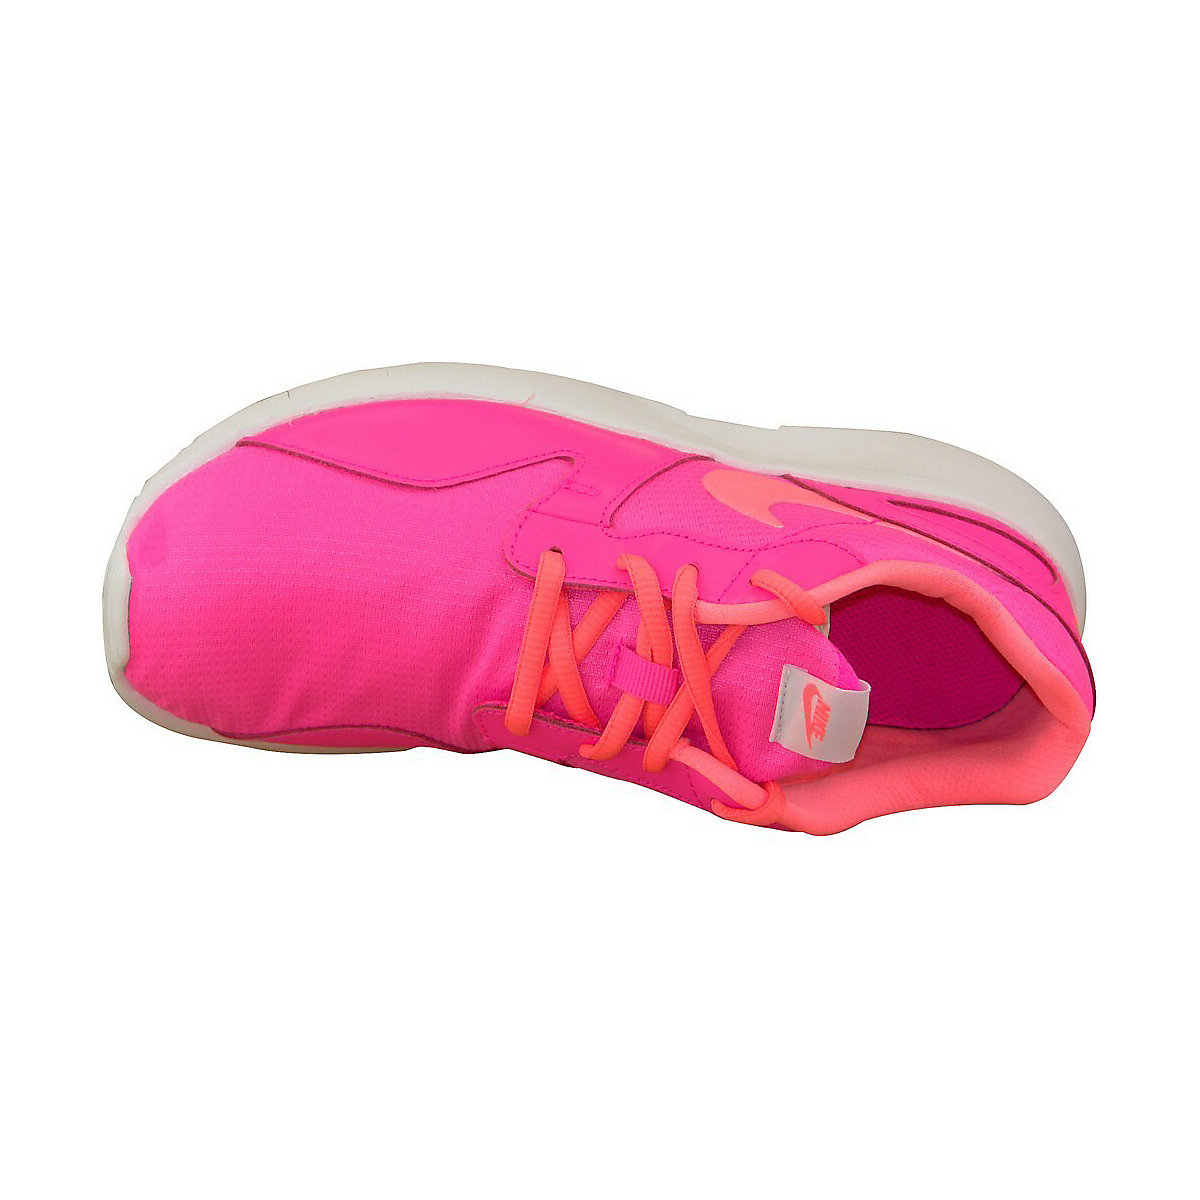 NIKE Sportschuhe Kaishi Gs 705492-601 Sportschuhe für Mädchen rosa